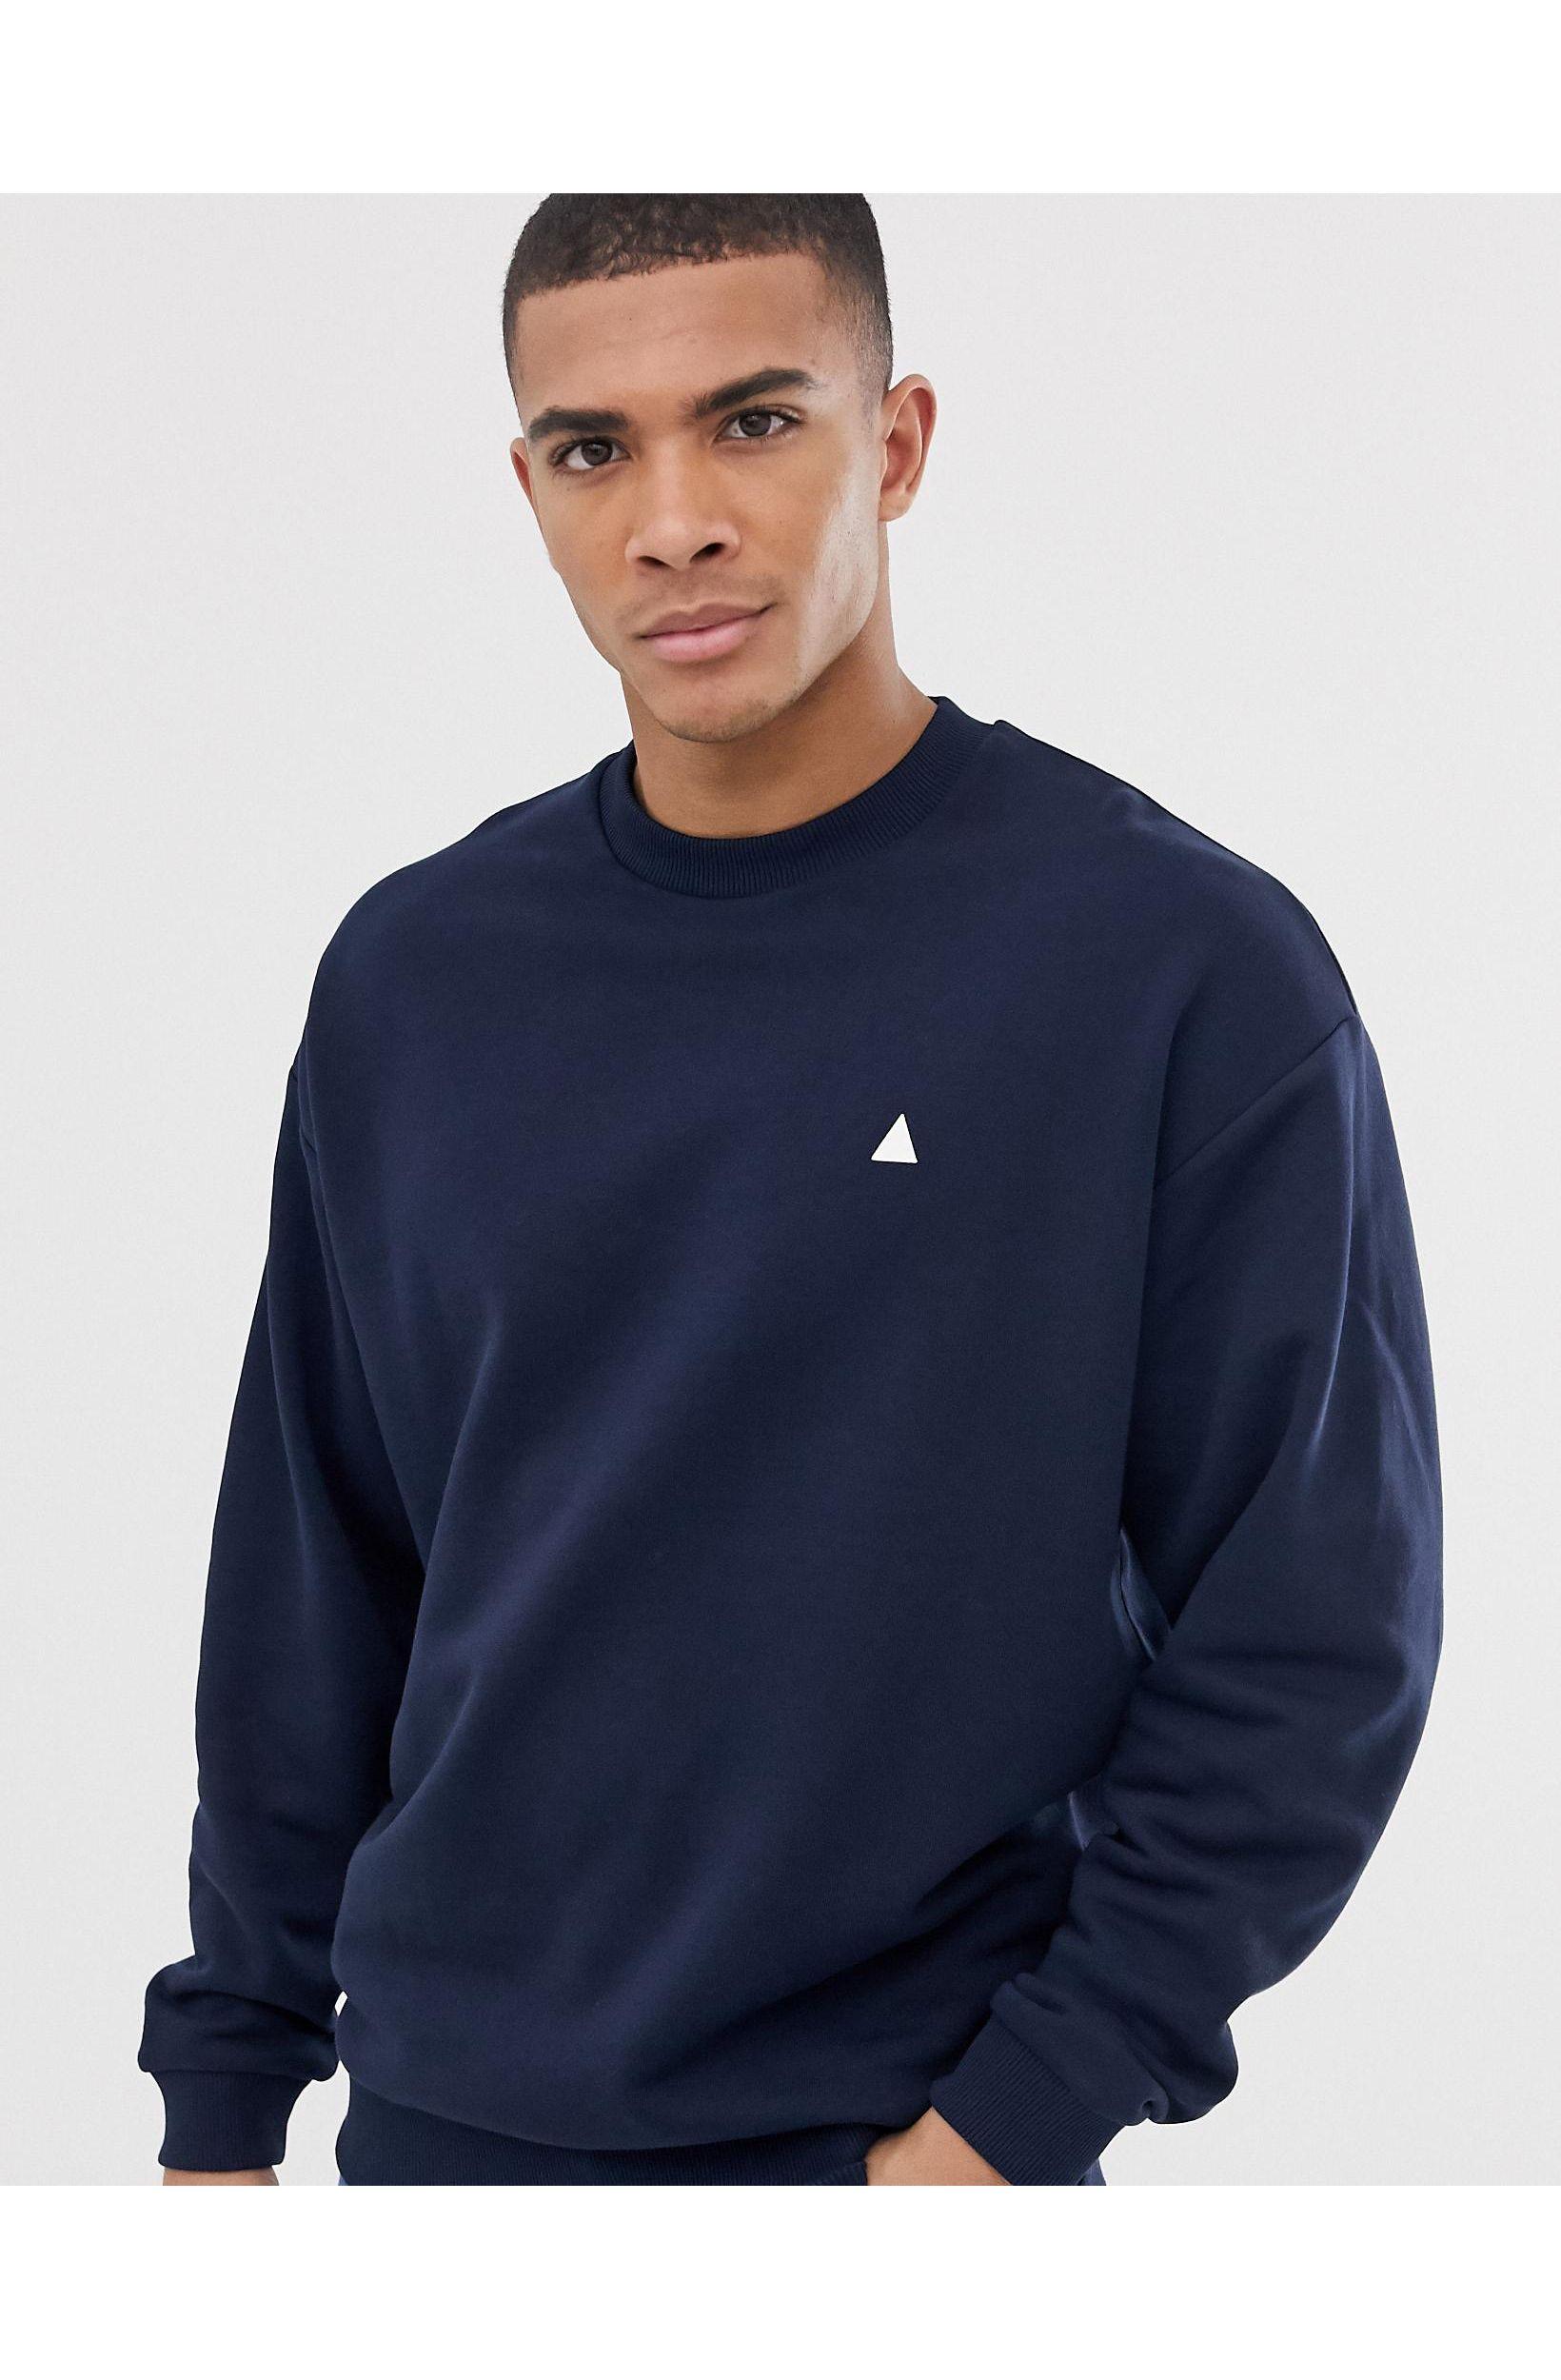 Buy > navy blue sweatshirt men > in stock